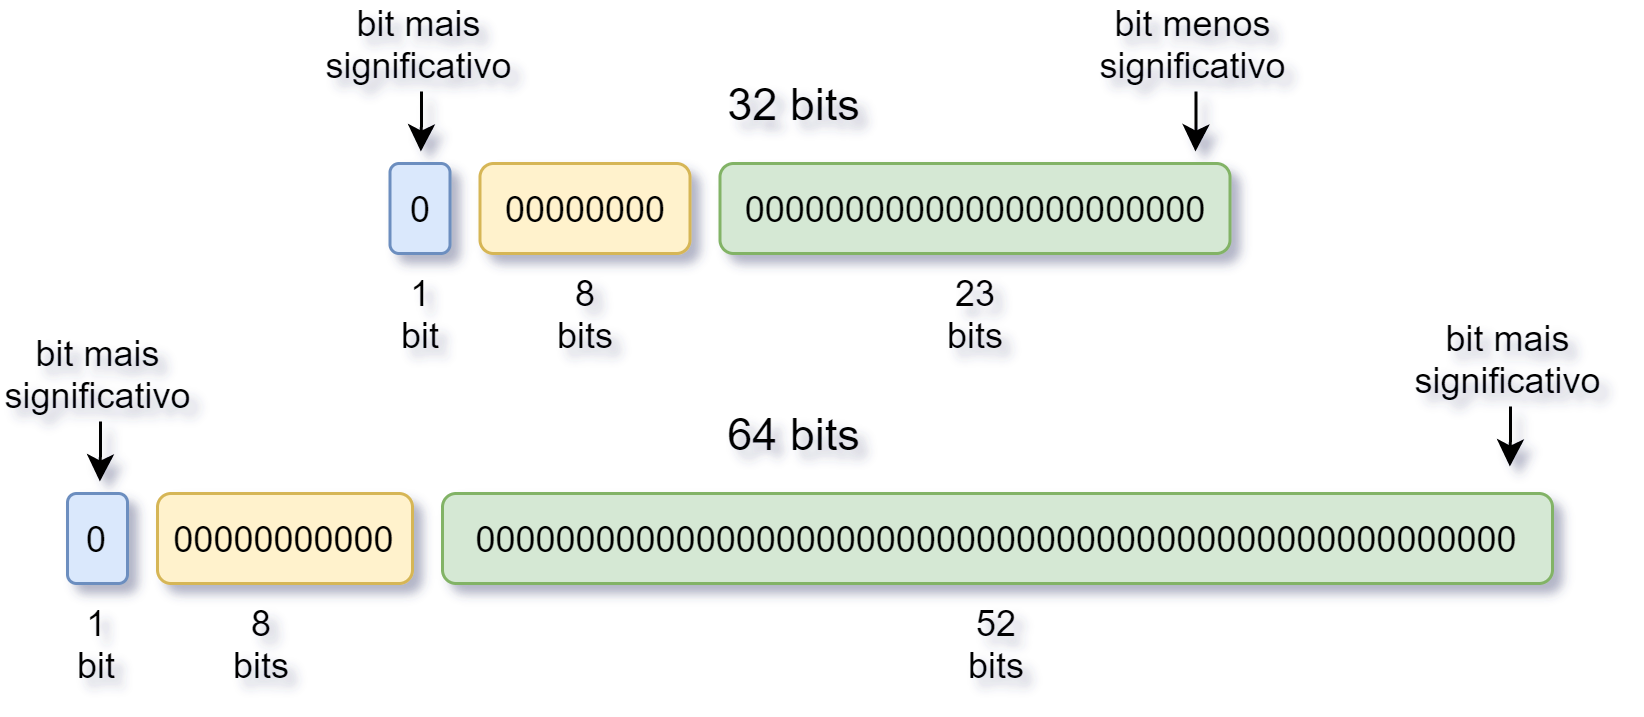 mostra as distribuição de bits o padrão ieee 754